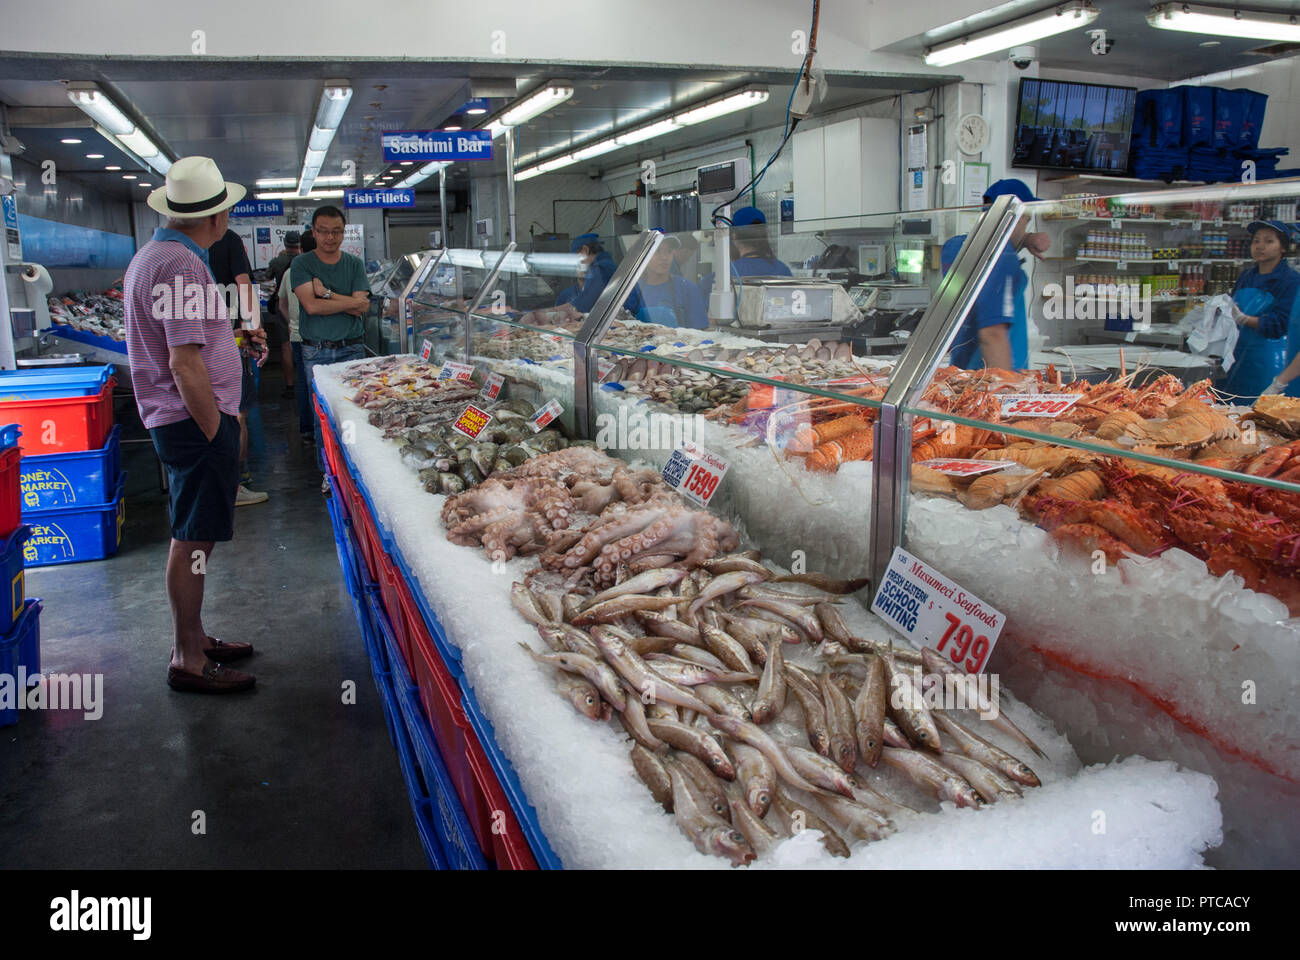 Innerhalb der Sydney Fish Market mit gut beleuchteten Ständen und Zähler in verschiedenen Fisch, Austern und Meeresfrüchte. Stockfoto